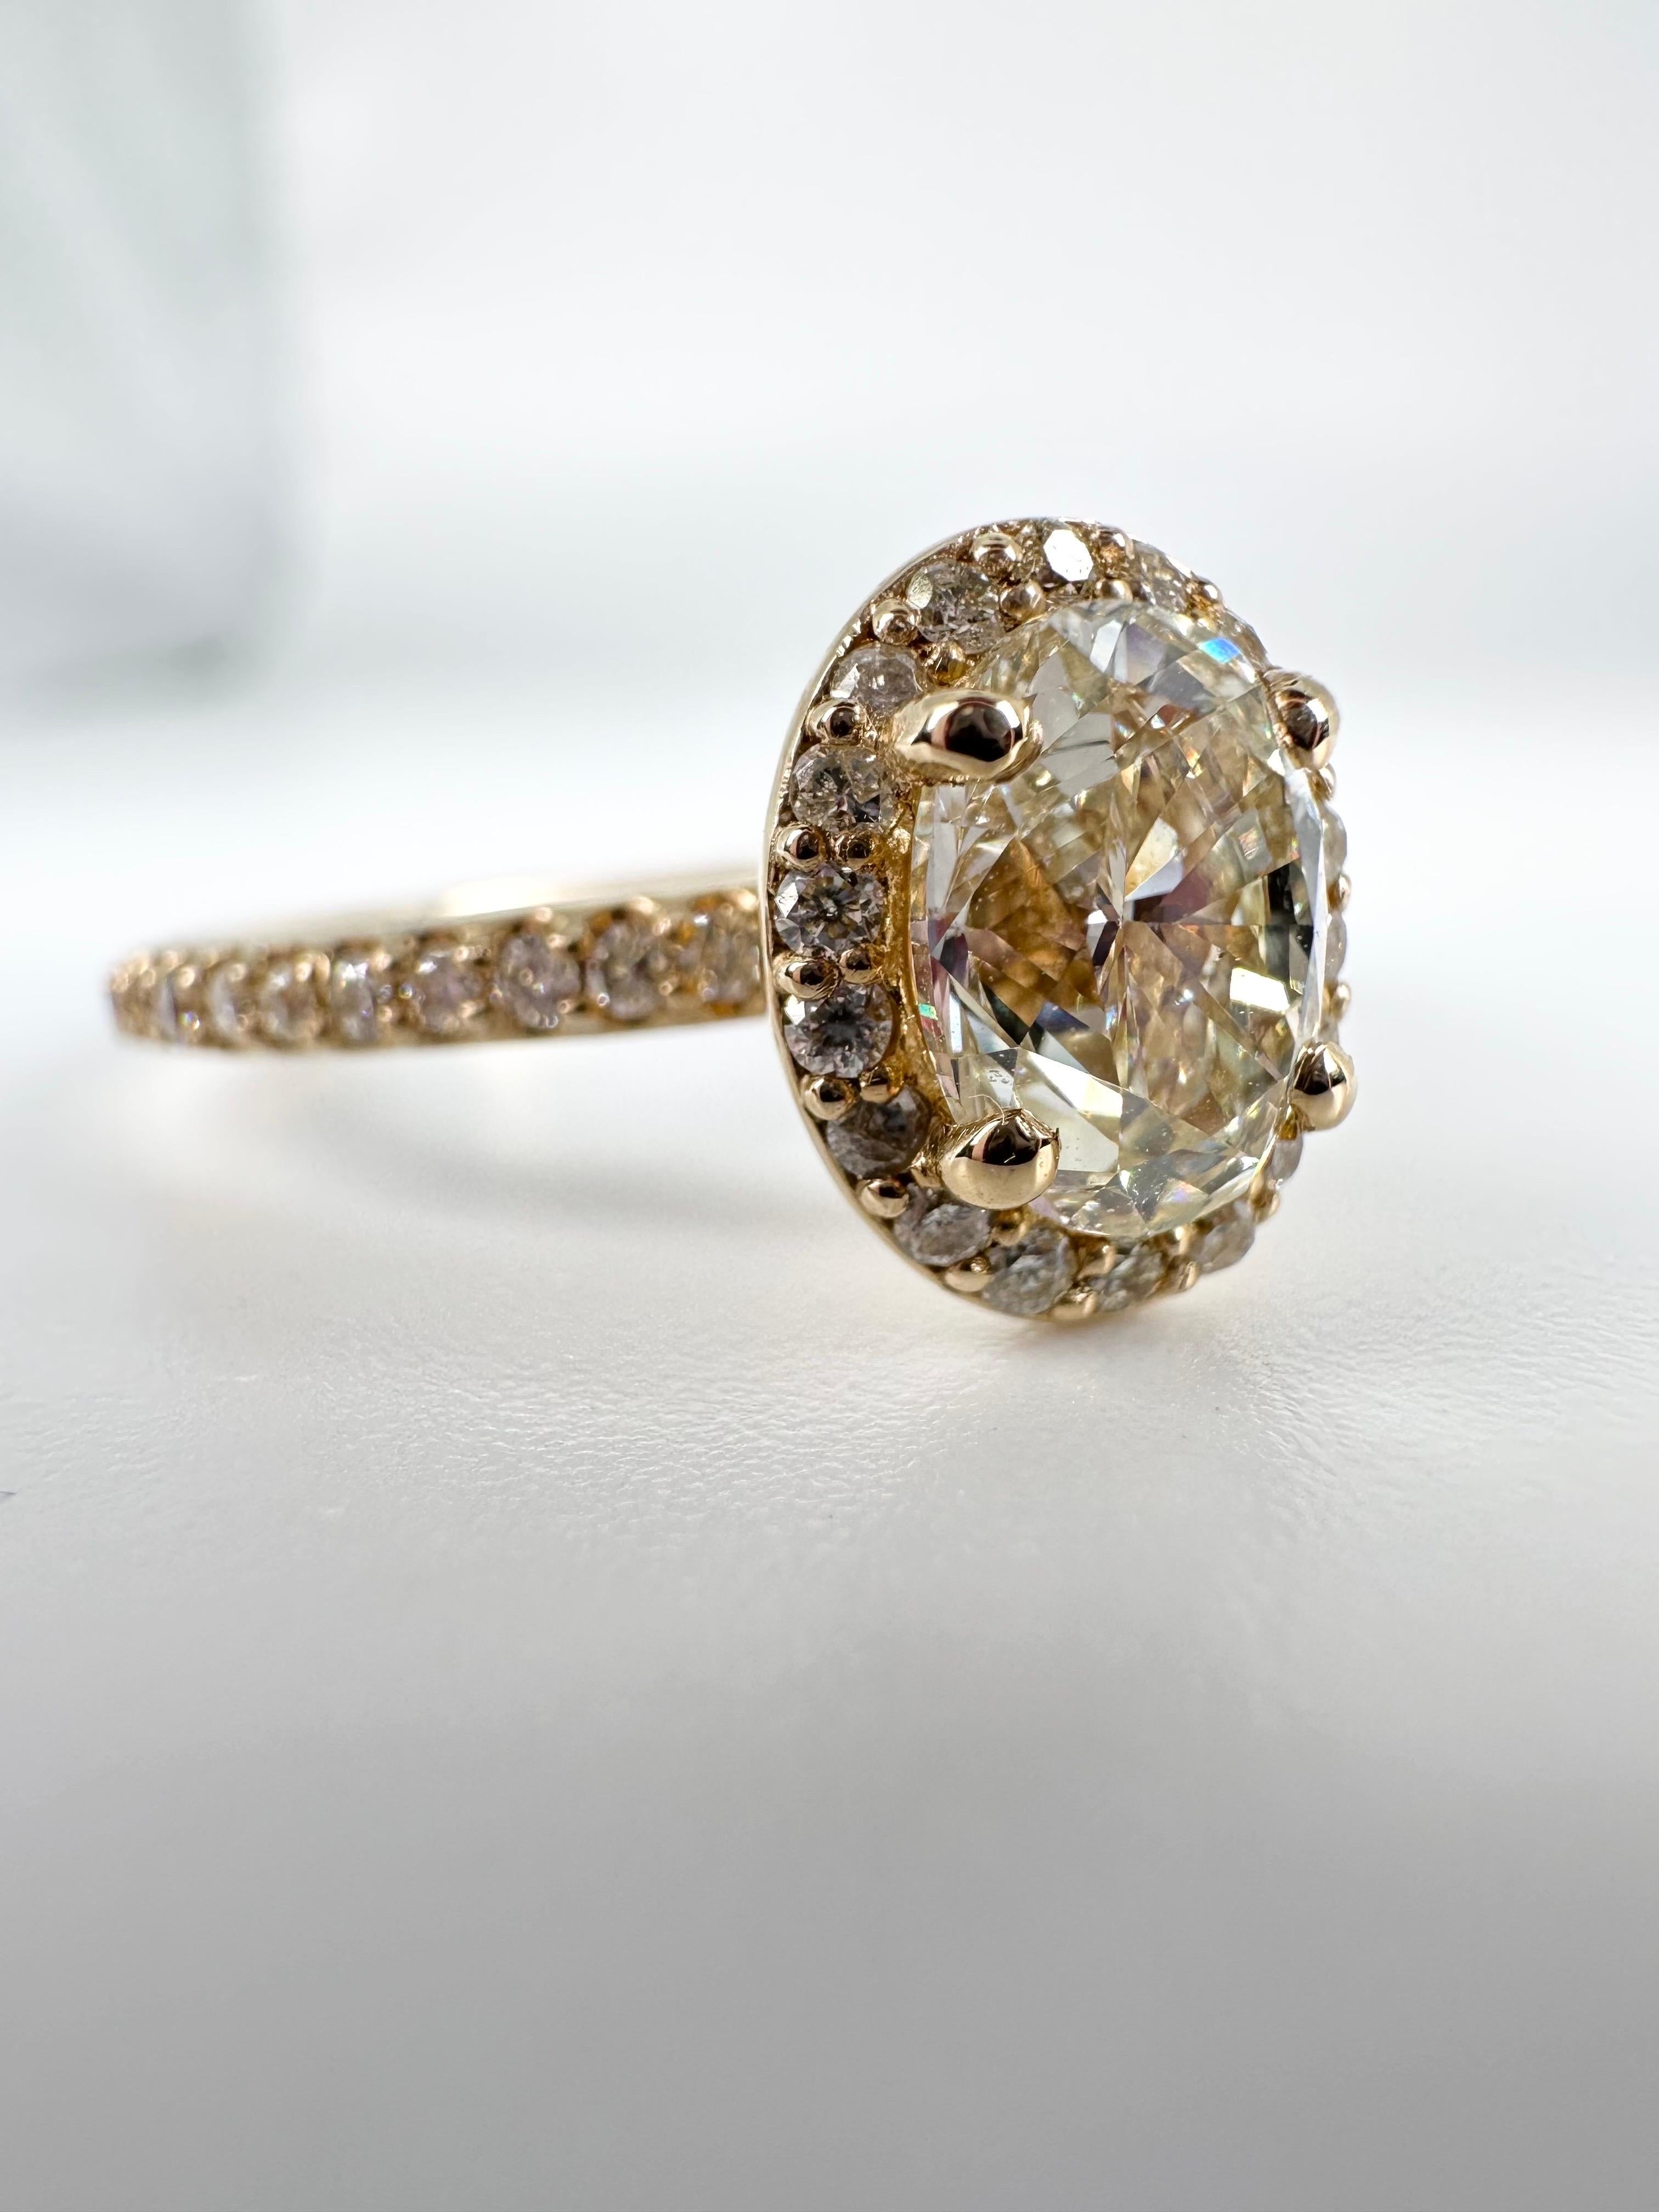 Bague de fiançailles unique en forme de halo avec un centre de 1.01ct VS1 clarity et K-L color. Les diamants qui l'accompagnent pèsent 0,40 carat en or jaune 14KT.

OR : or 14KT
DIAMANT(S) NATUREL(S)
Clarté/Couleur : VS-SI/H (VS1/L au